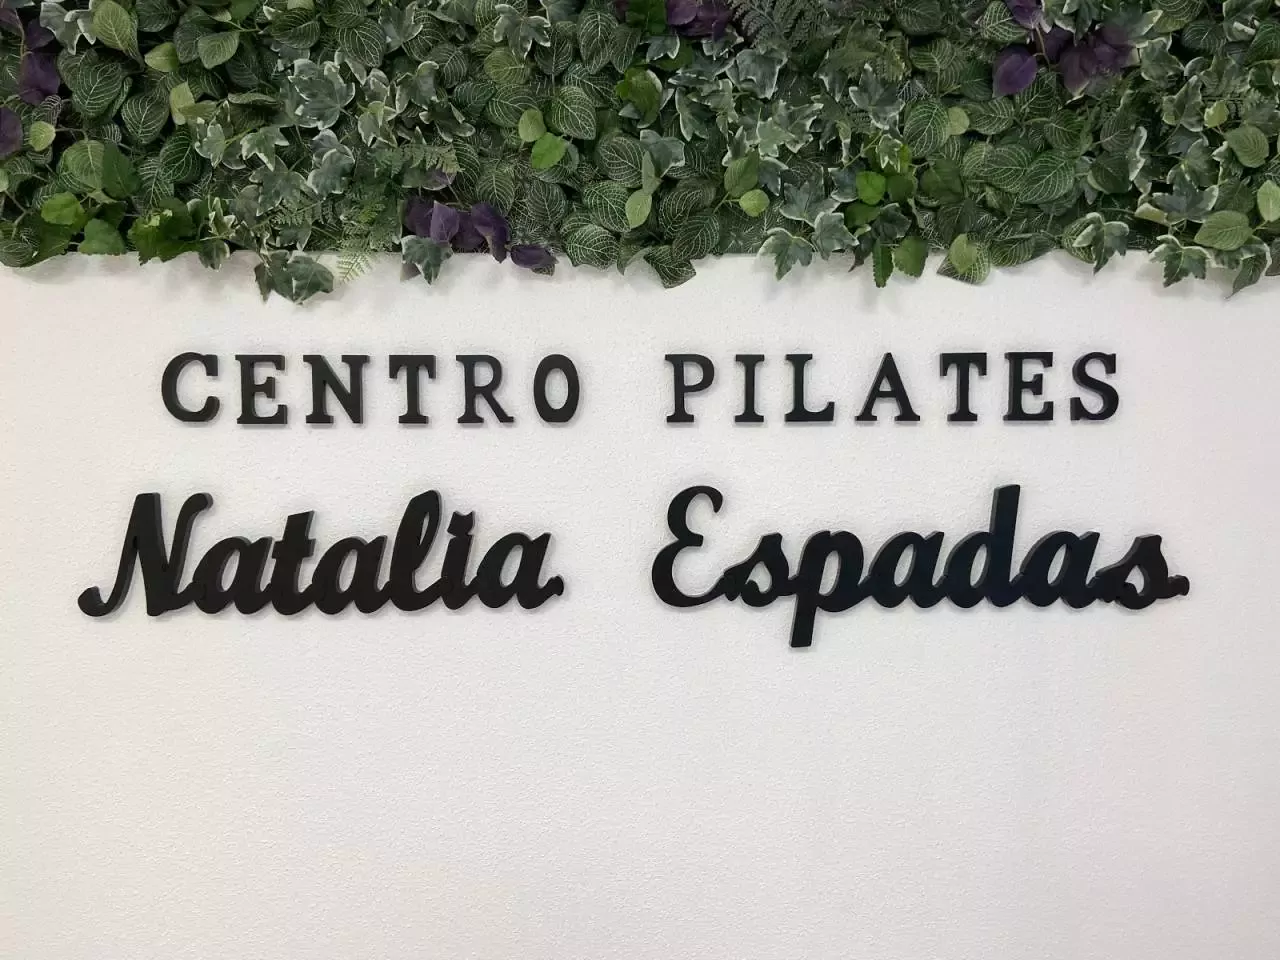 6. Centro de Pilates Natalia Espadas